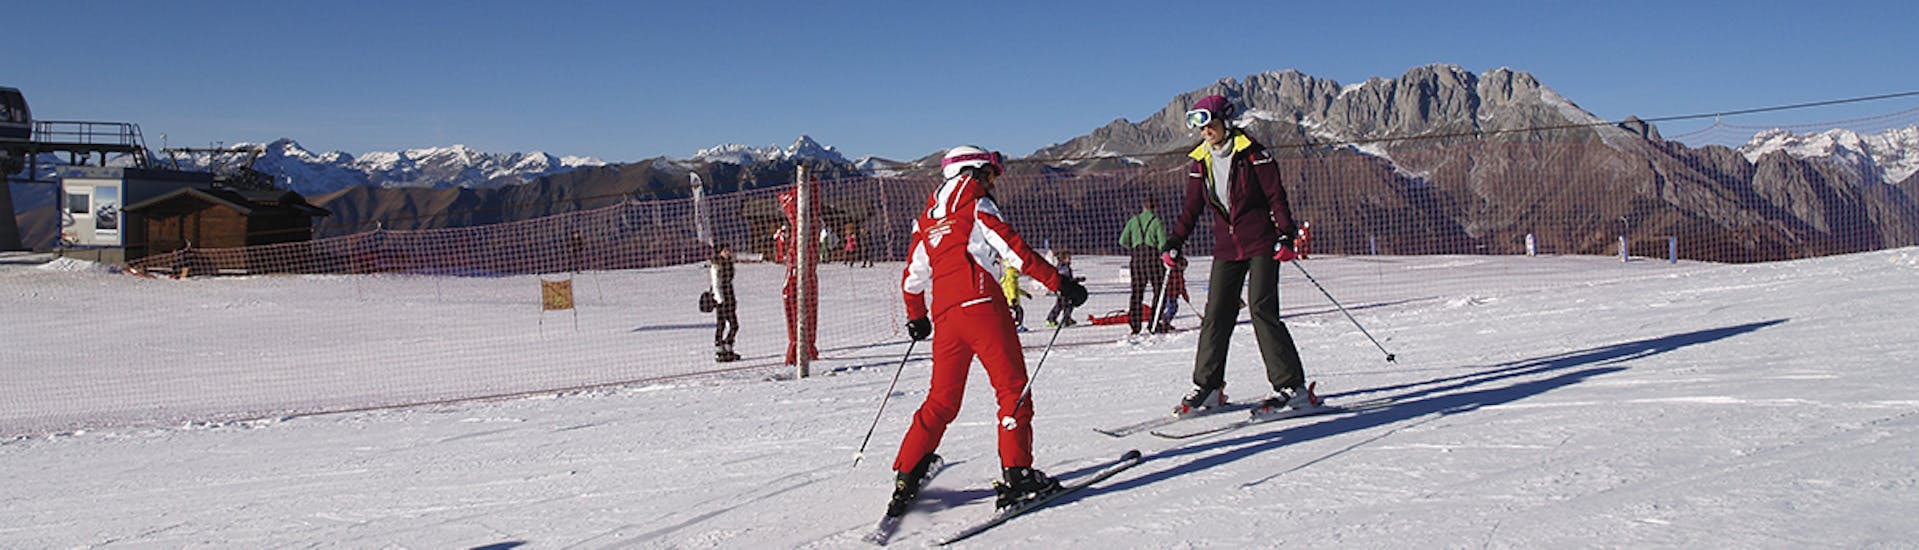 Partecipante che prende parte a una delle lezioni private di sci per adulti di tutti i livelli.